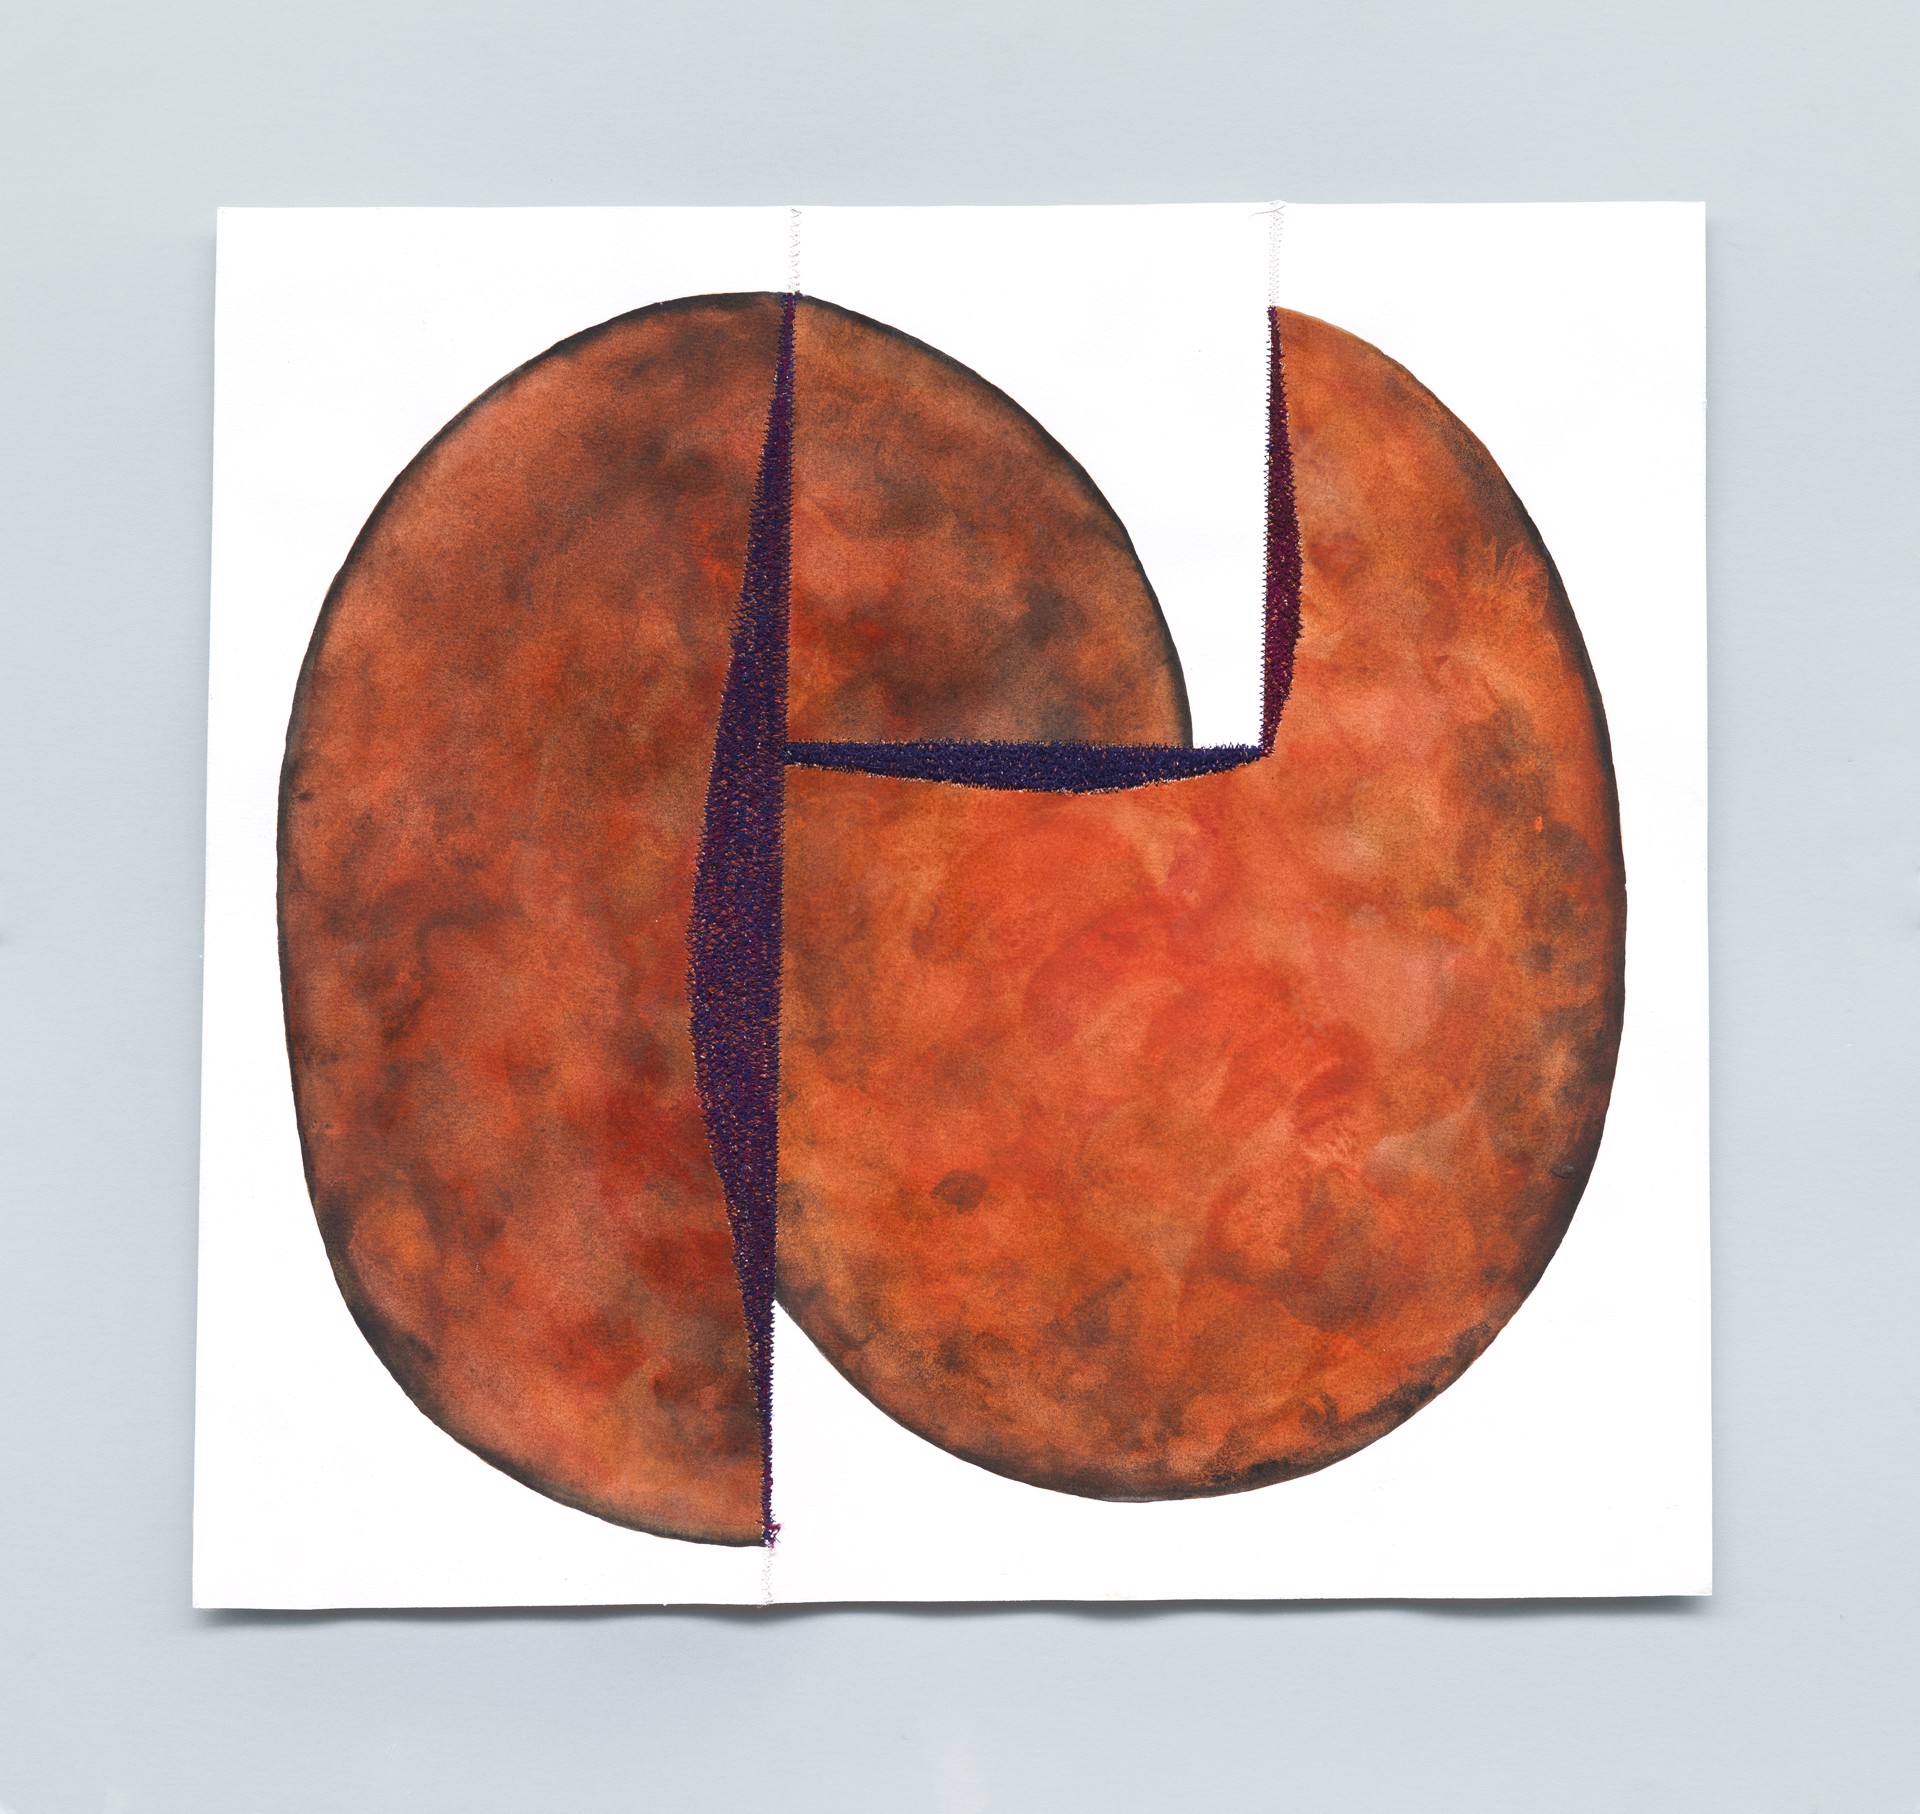 Found Object 37 (Orange Ball) by Molly Sawyer